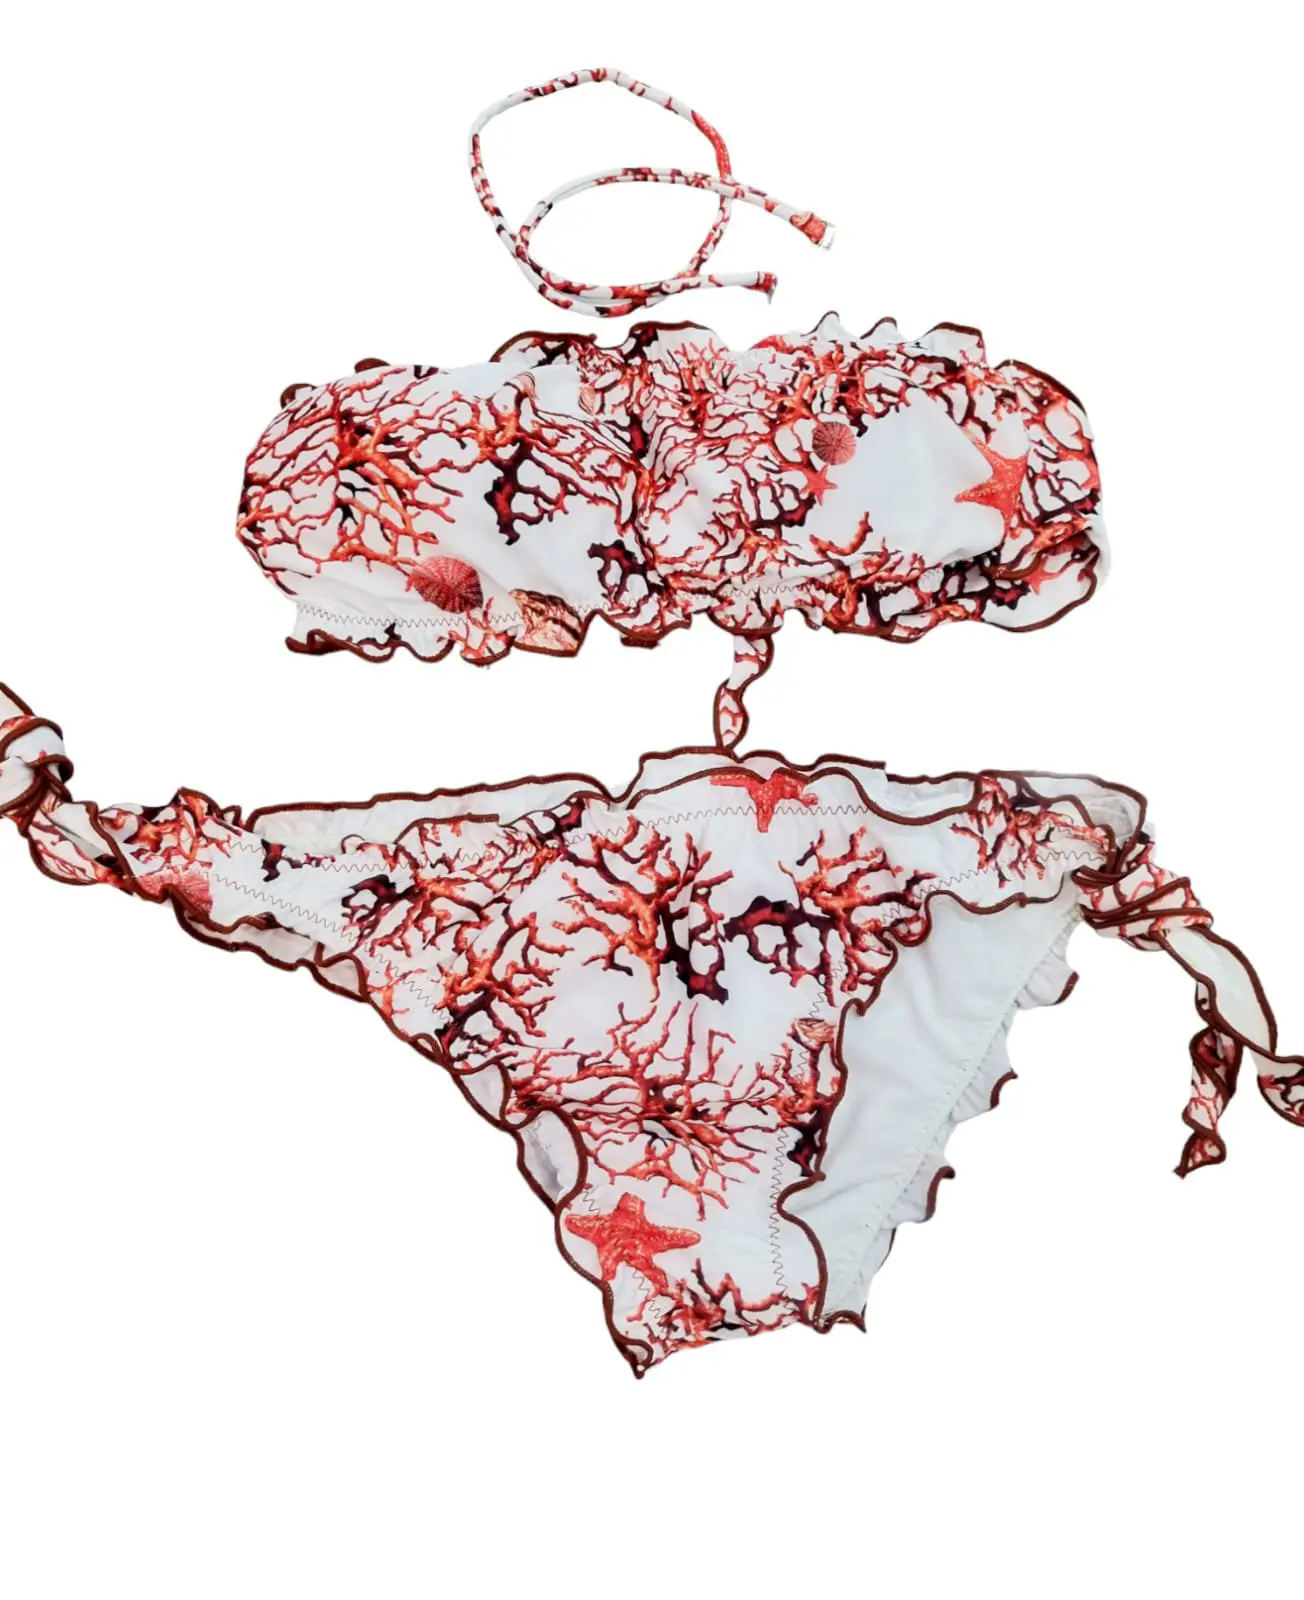 Bikini bandeau con relleno, posibilidad de añadir tirante, braguita ajustable con rizos estampado coral rojo.